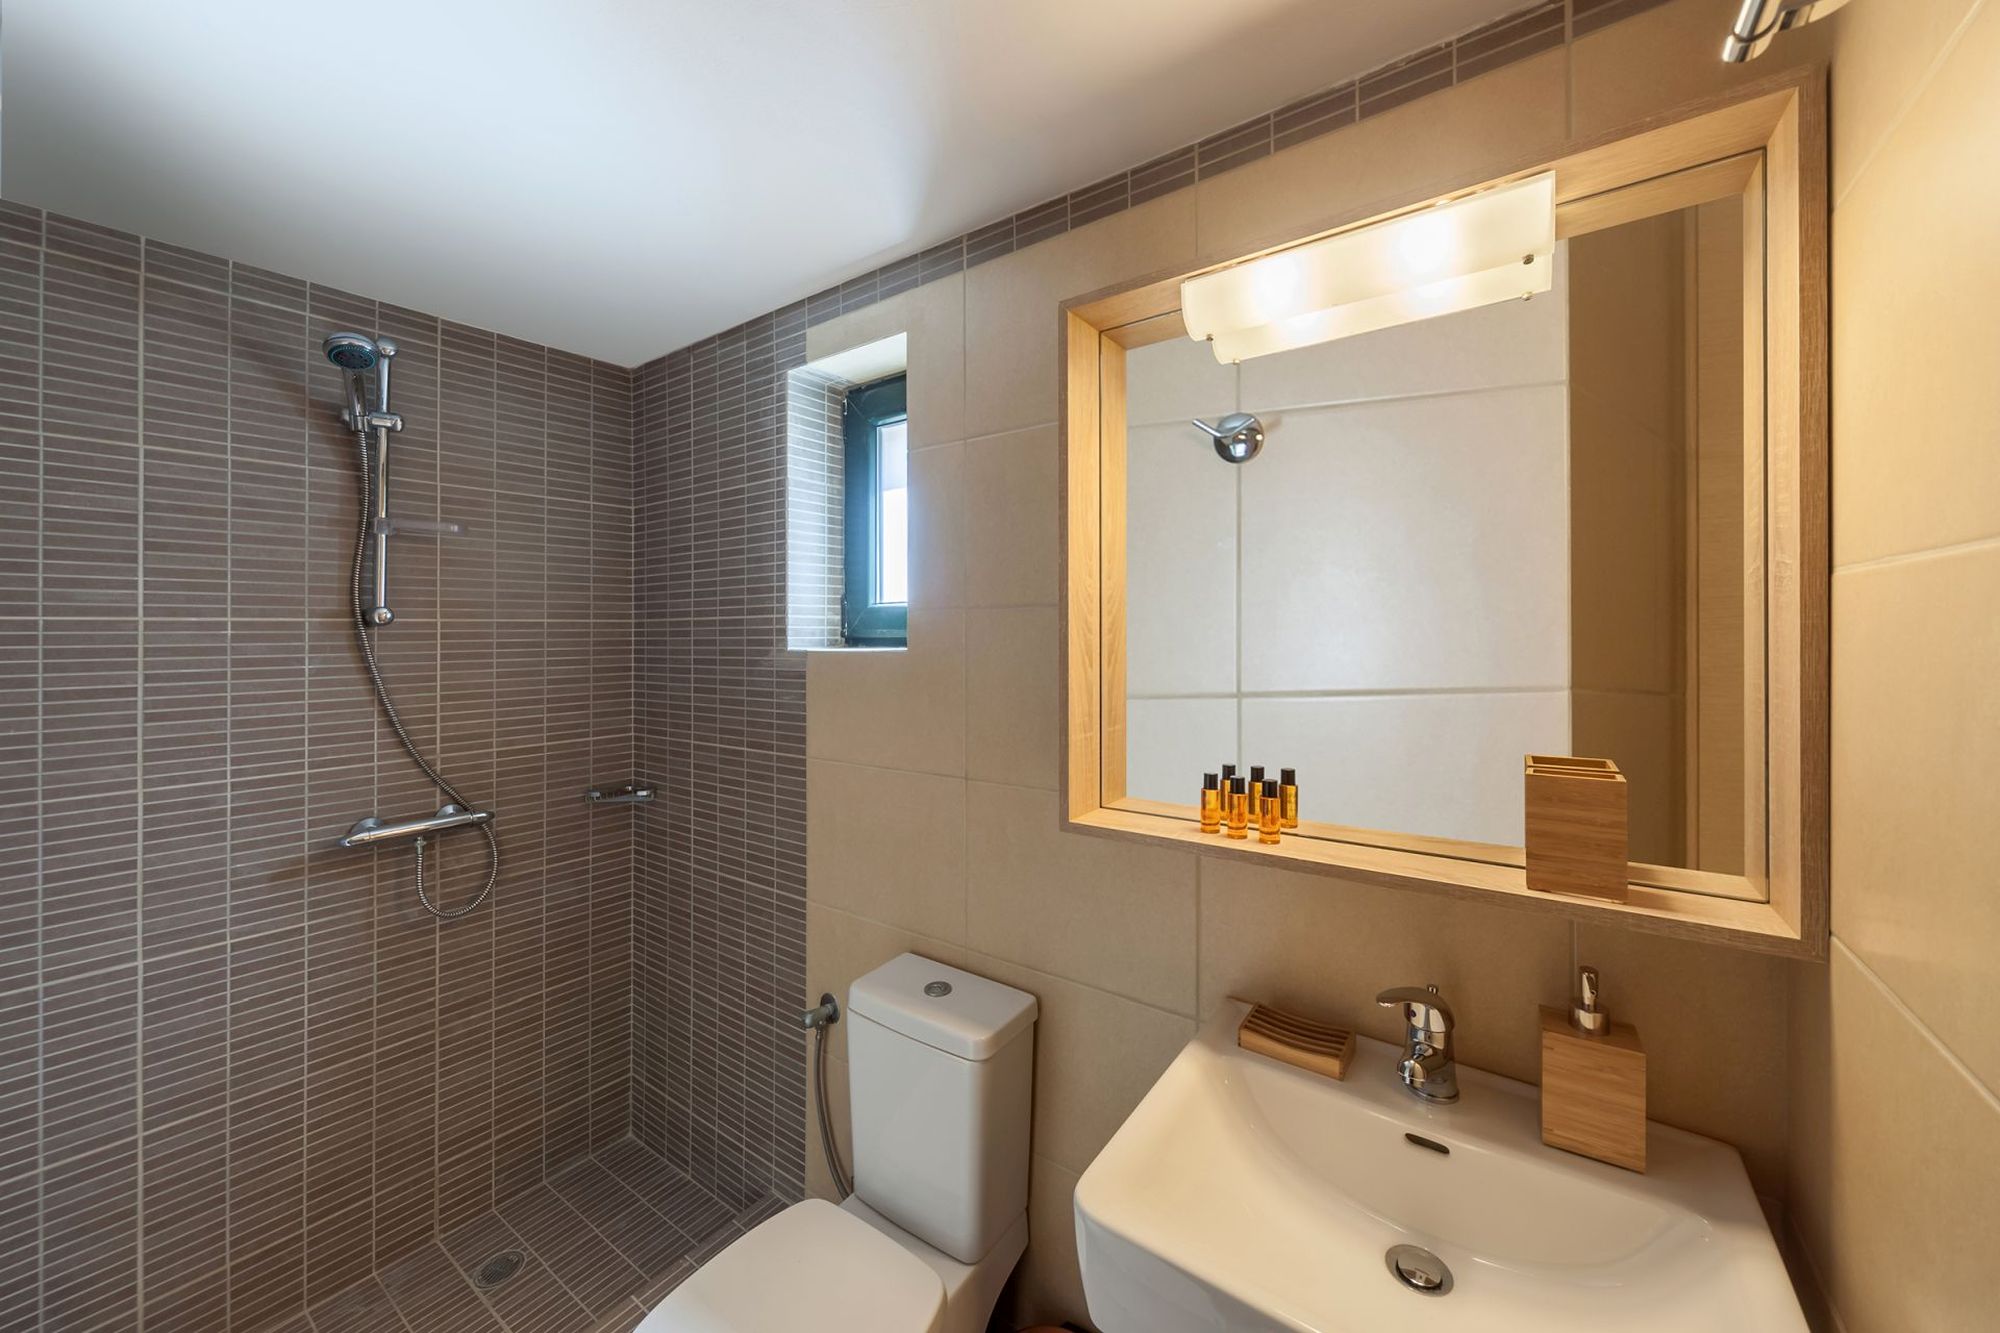 Μοντέρνο μπάνιο με ντουζιέρα σε γκρι και μπεζ αποχρώσεις, ένα μεγάλο λευκό νιπτήρα και ένα μεγάλο ξύλινο καθρέφτη.